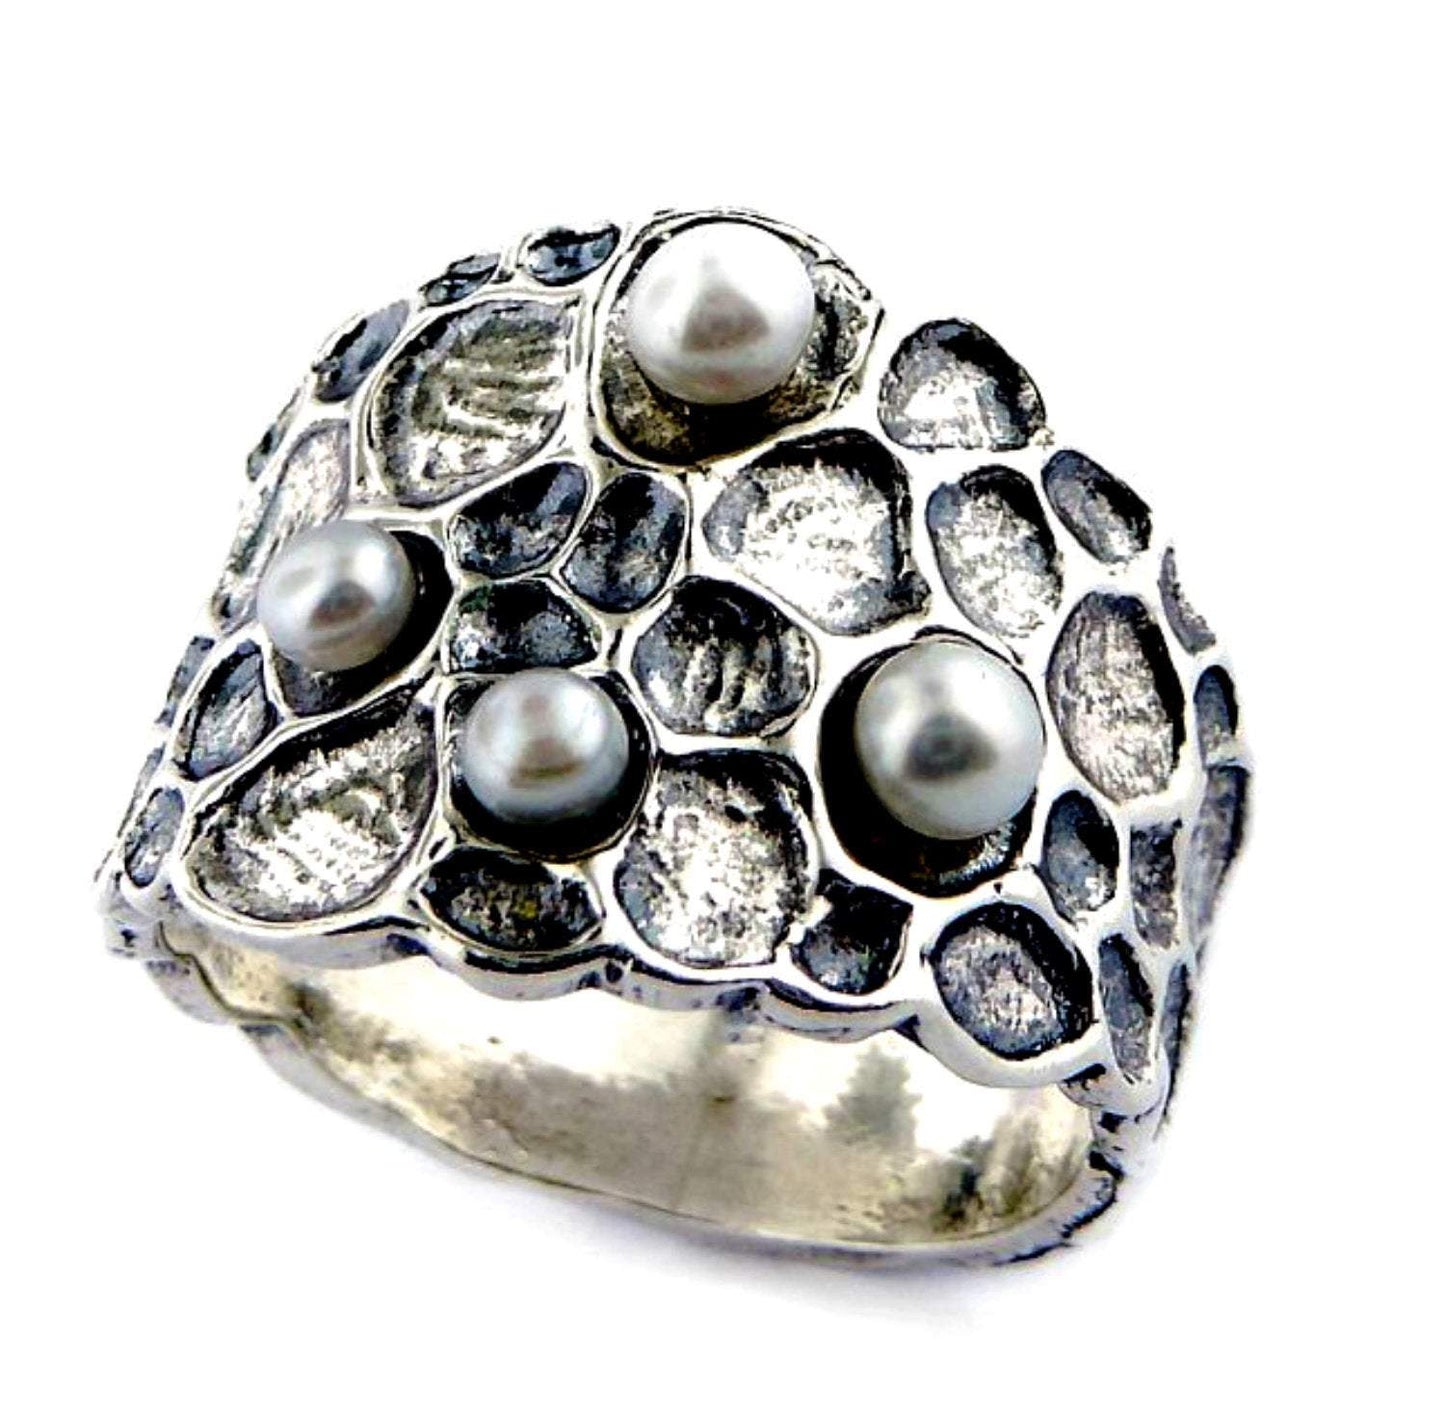 Bluenoemi Jewelry Rings Lovely silver ring for women, pearls silver rings for women, bohemian silber ringe für frauen